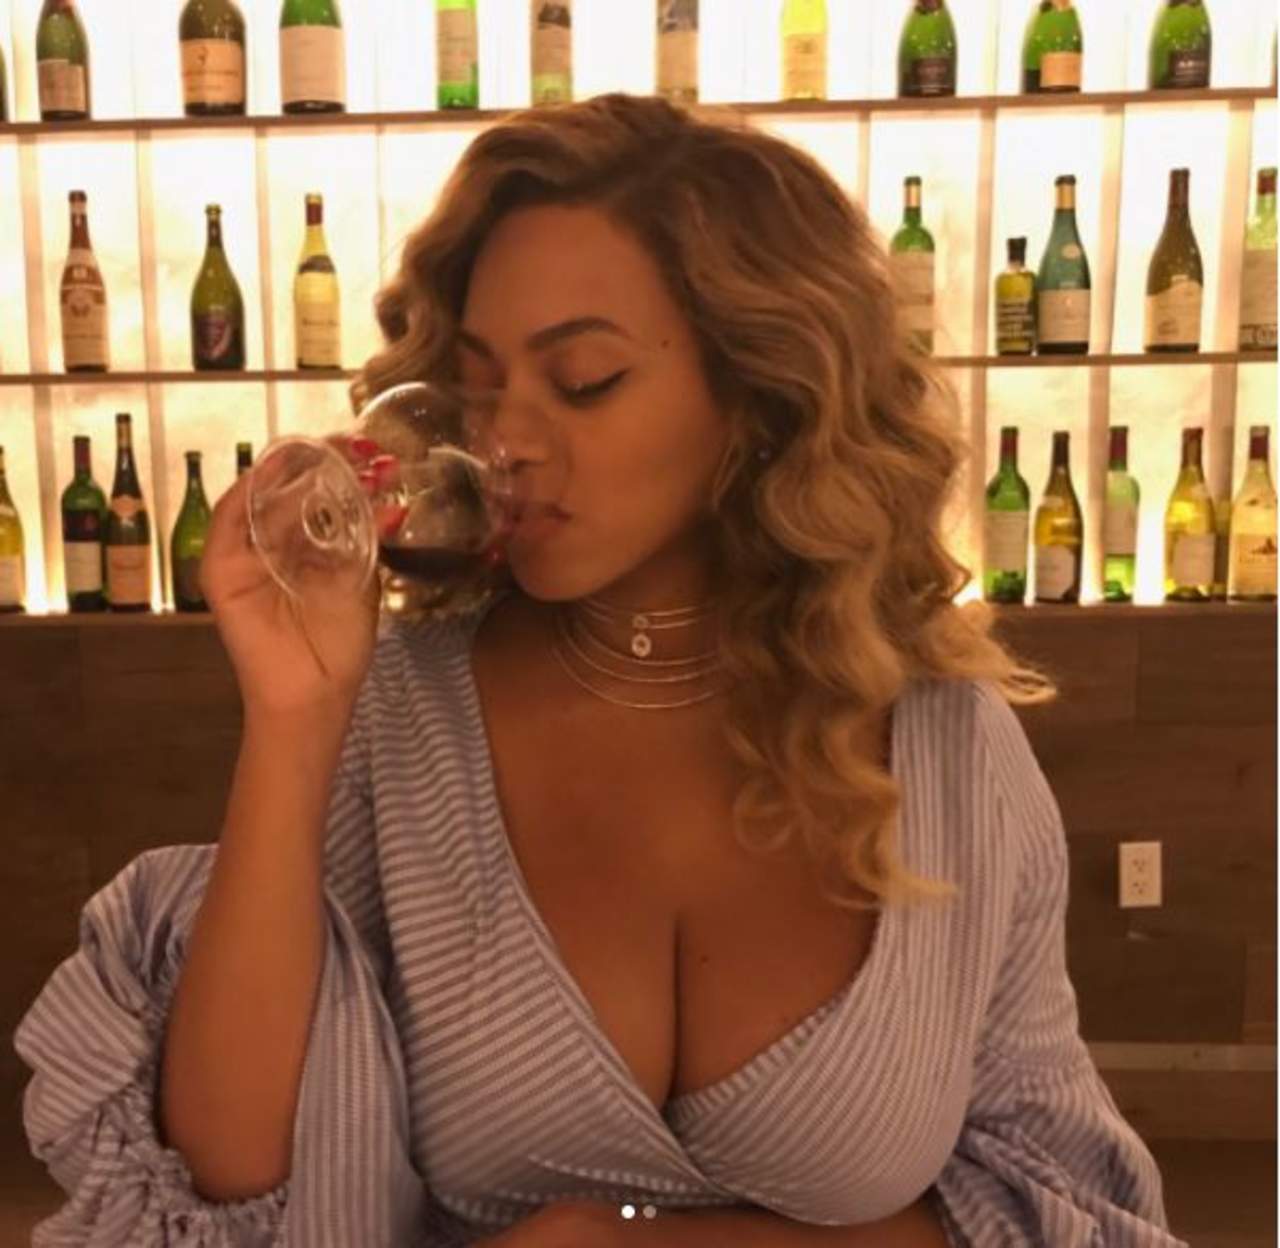 La cantante publicó una imagen donde se ve bebiendo una copa de vino, por lo que la criticaron ya que hace más de un mes dio a luz a mellizos. (INSTAGRAM)